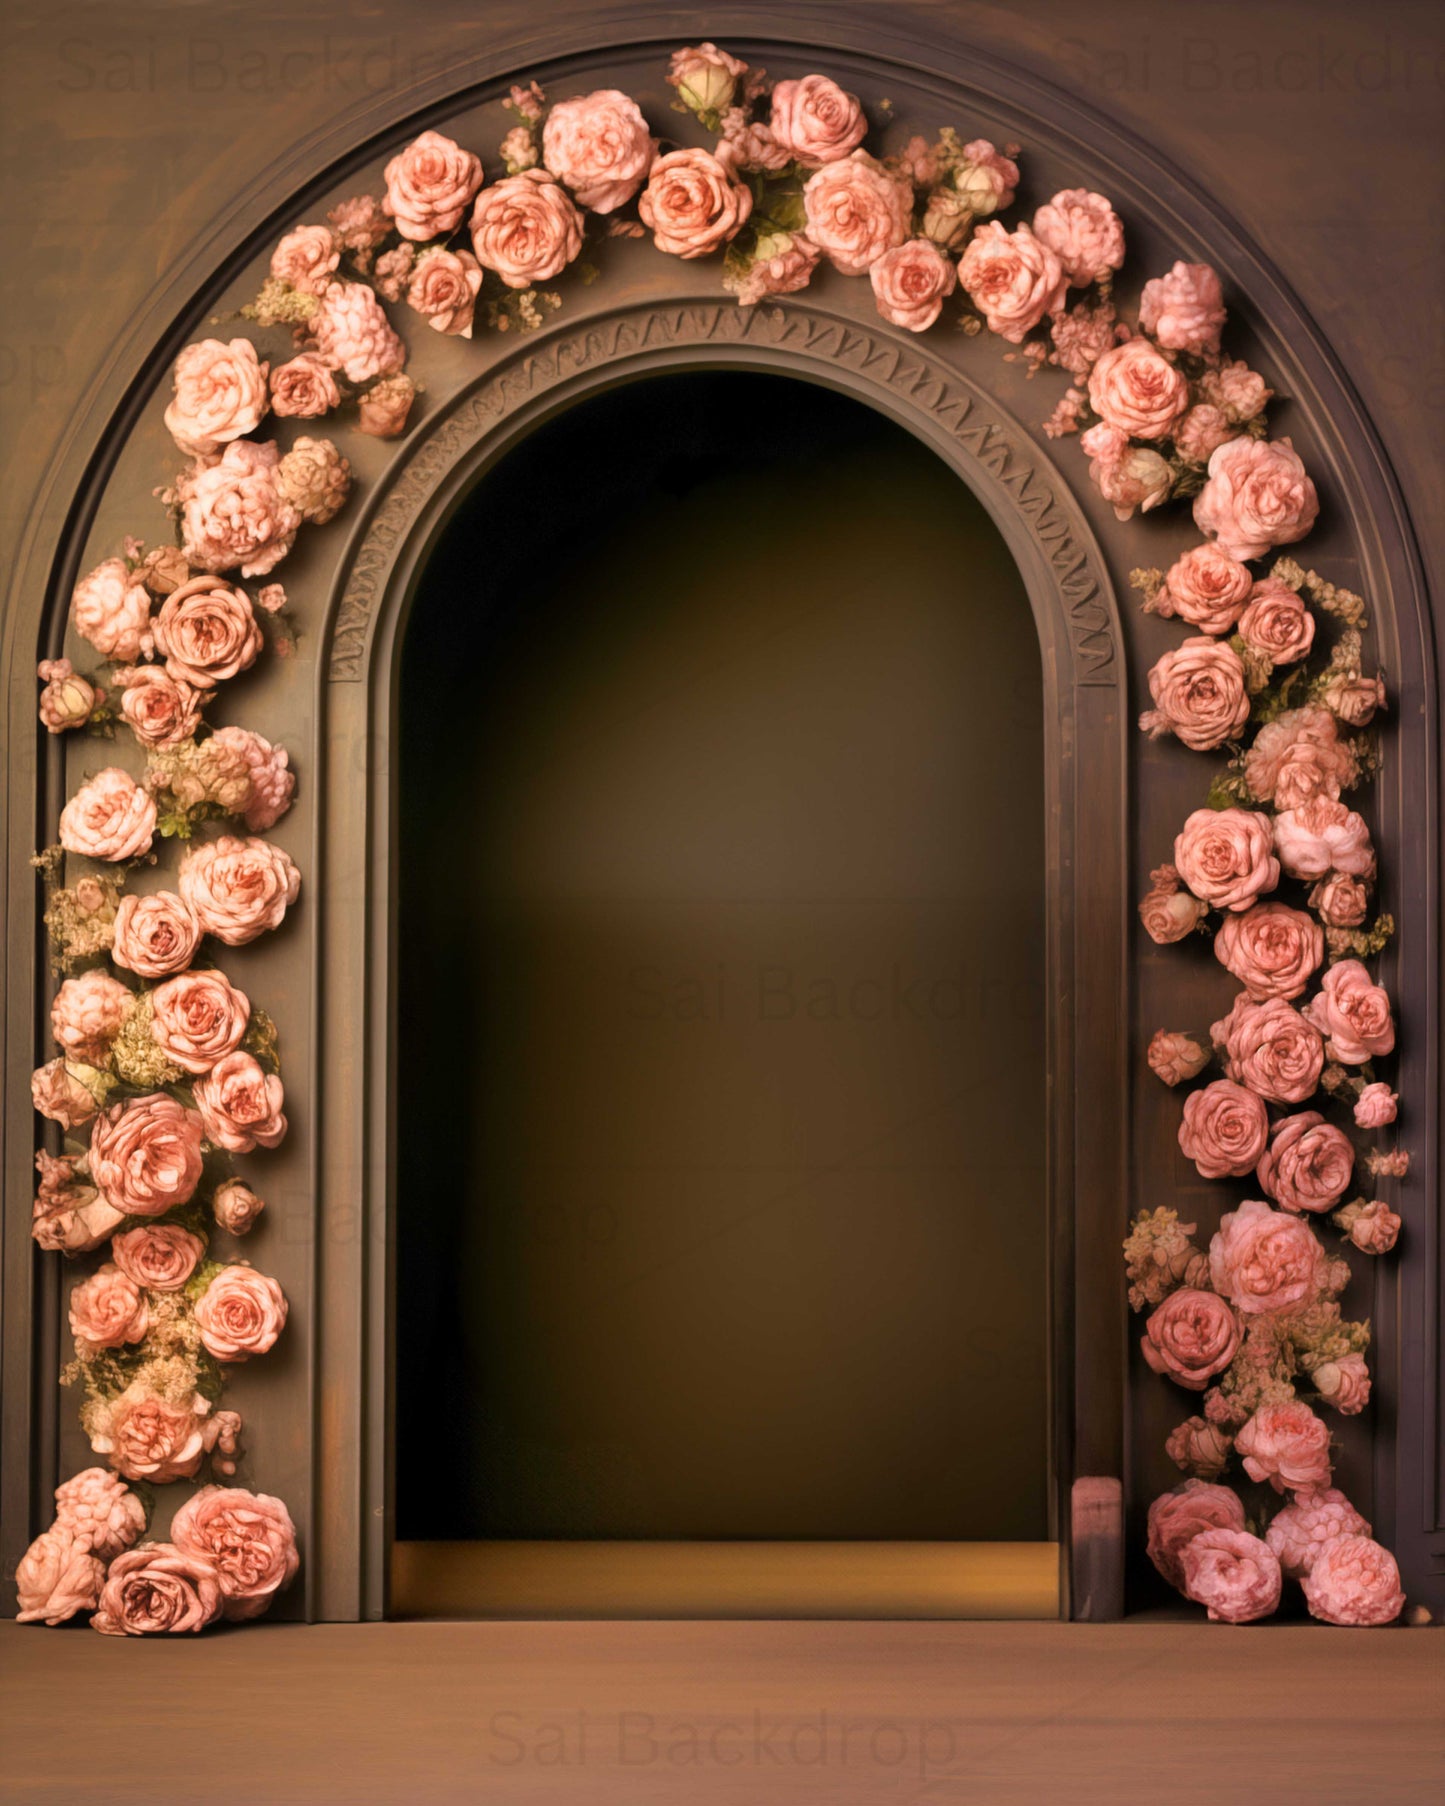 Enchanted Rose Gateway Theme Backdrop